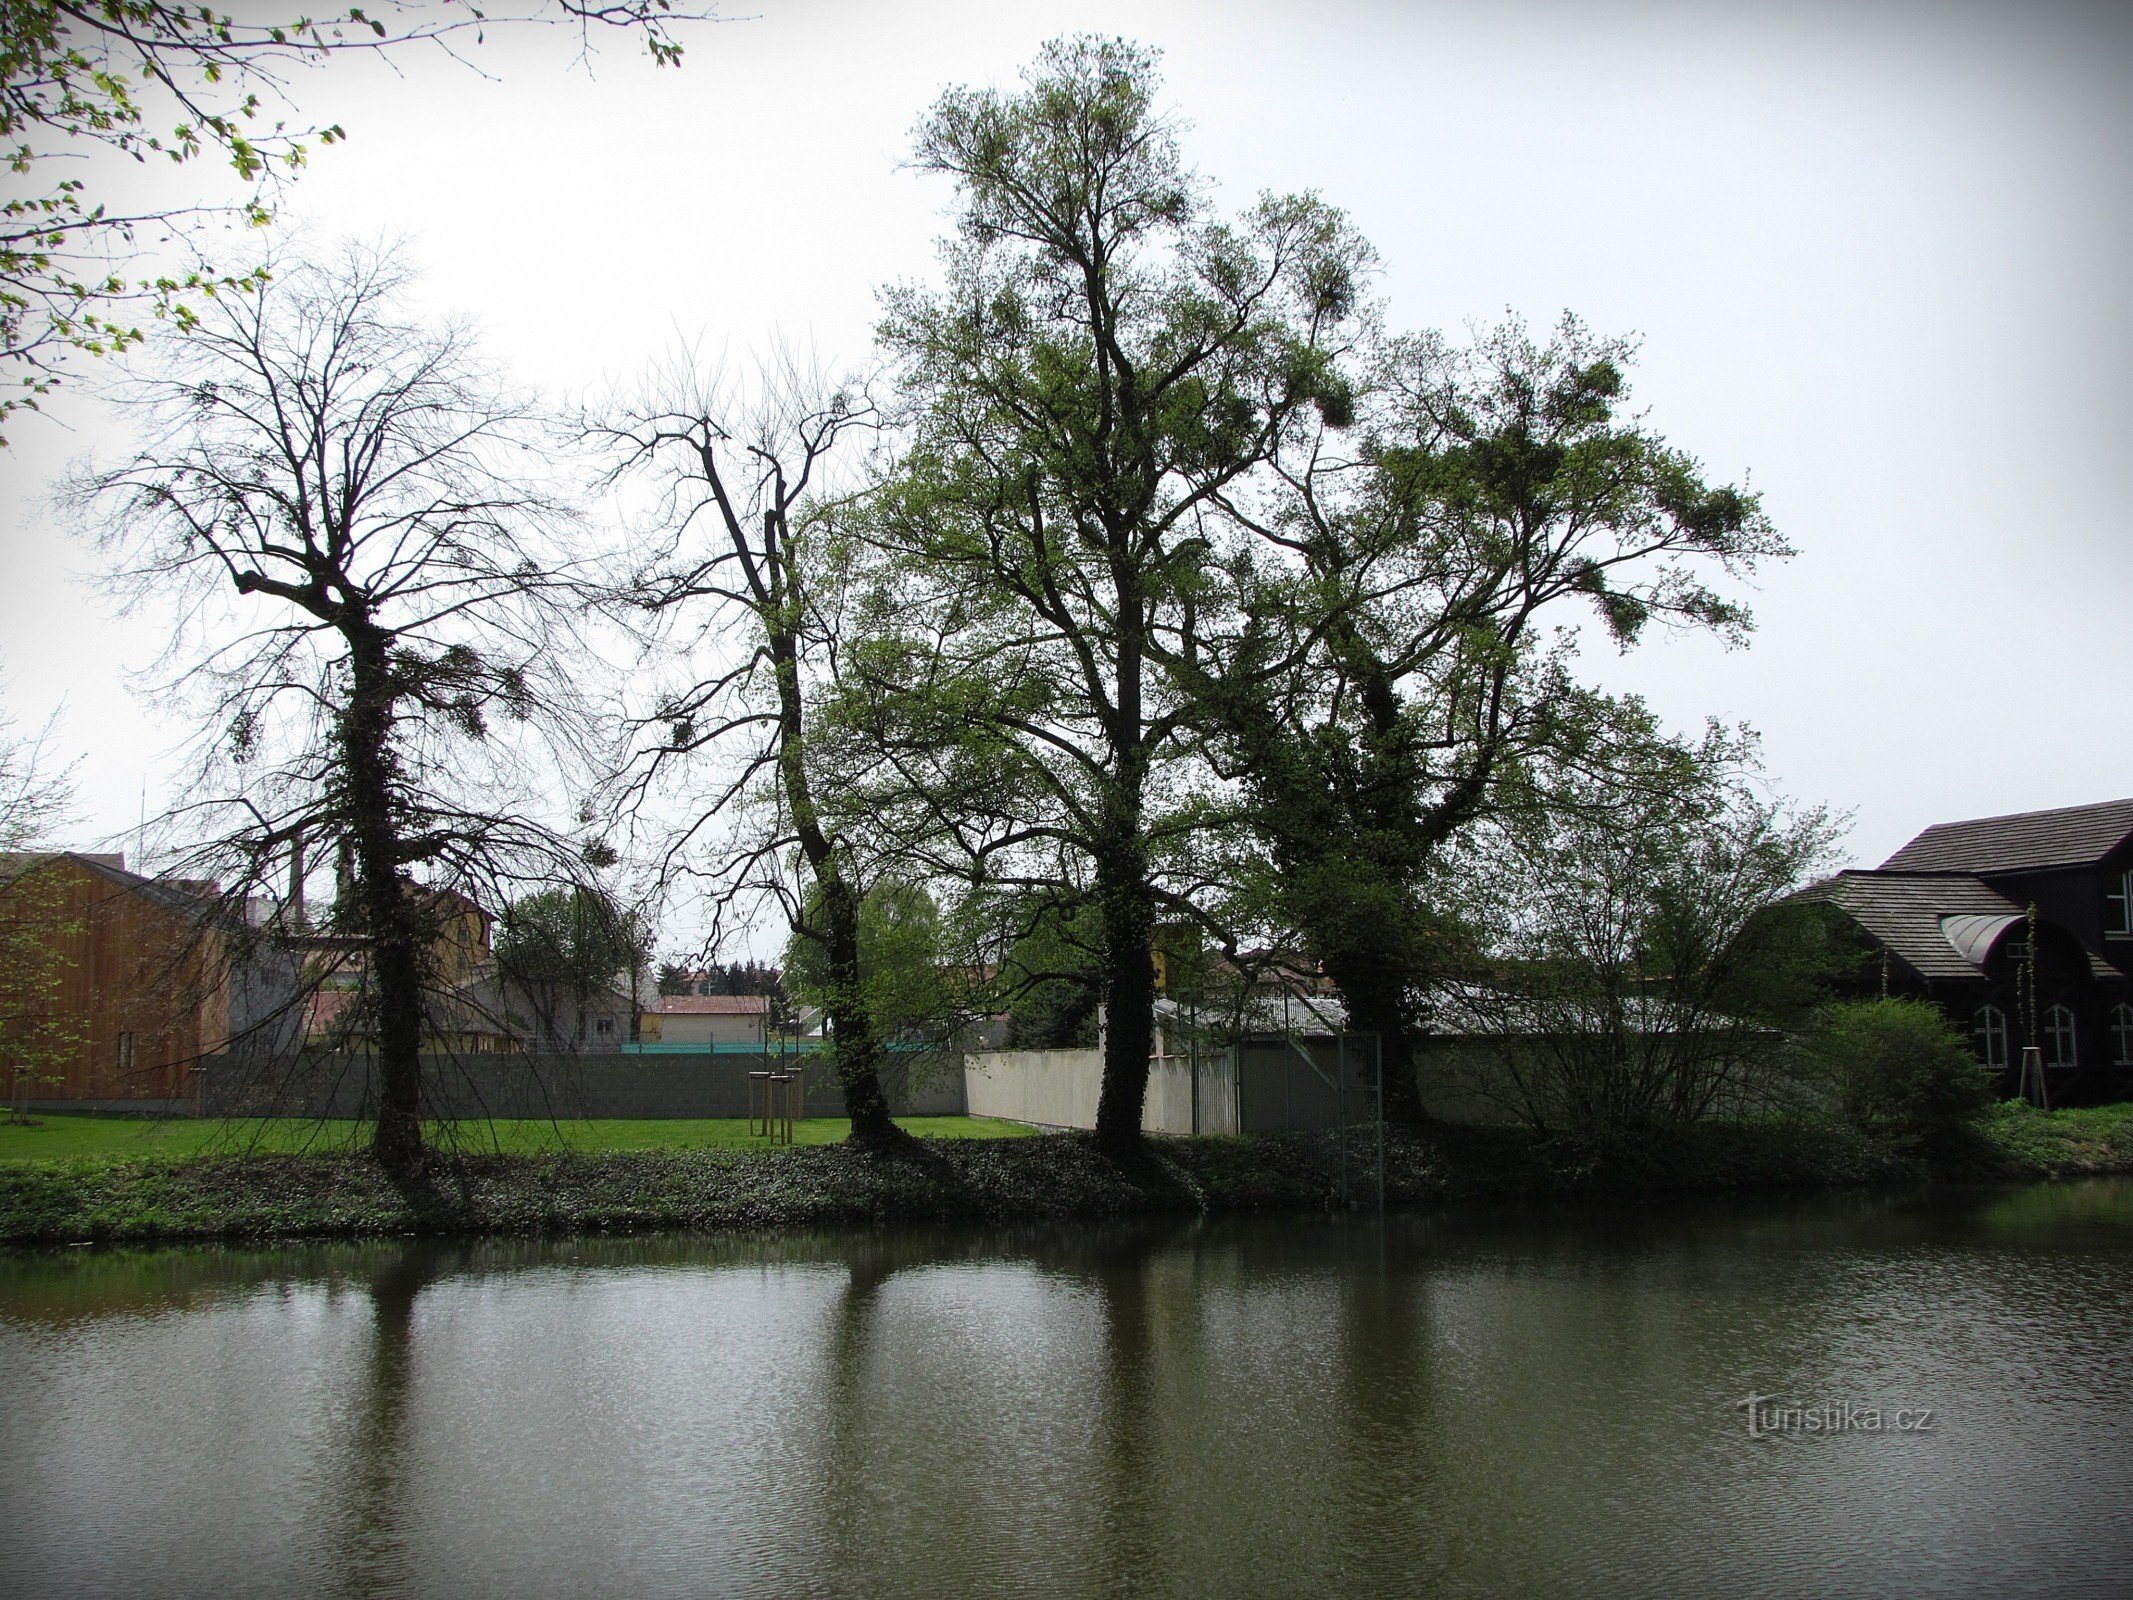 Avkoppling vid Long Pond i Podzámecká Garden i Kroměříž